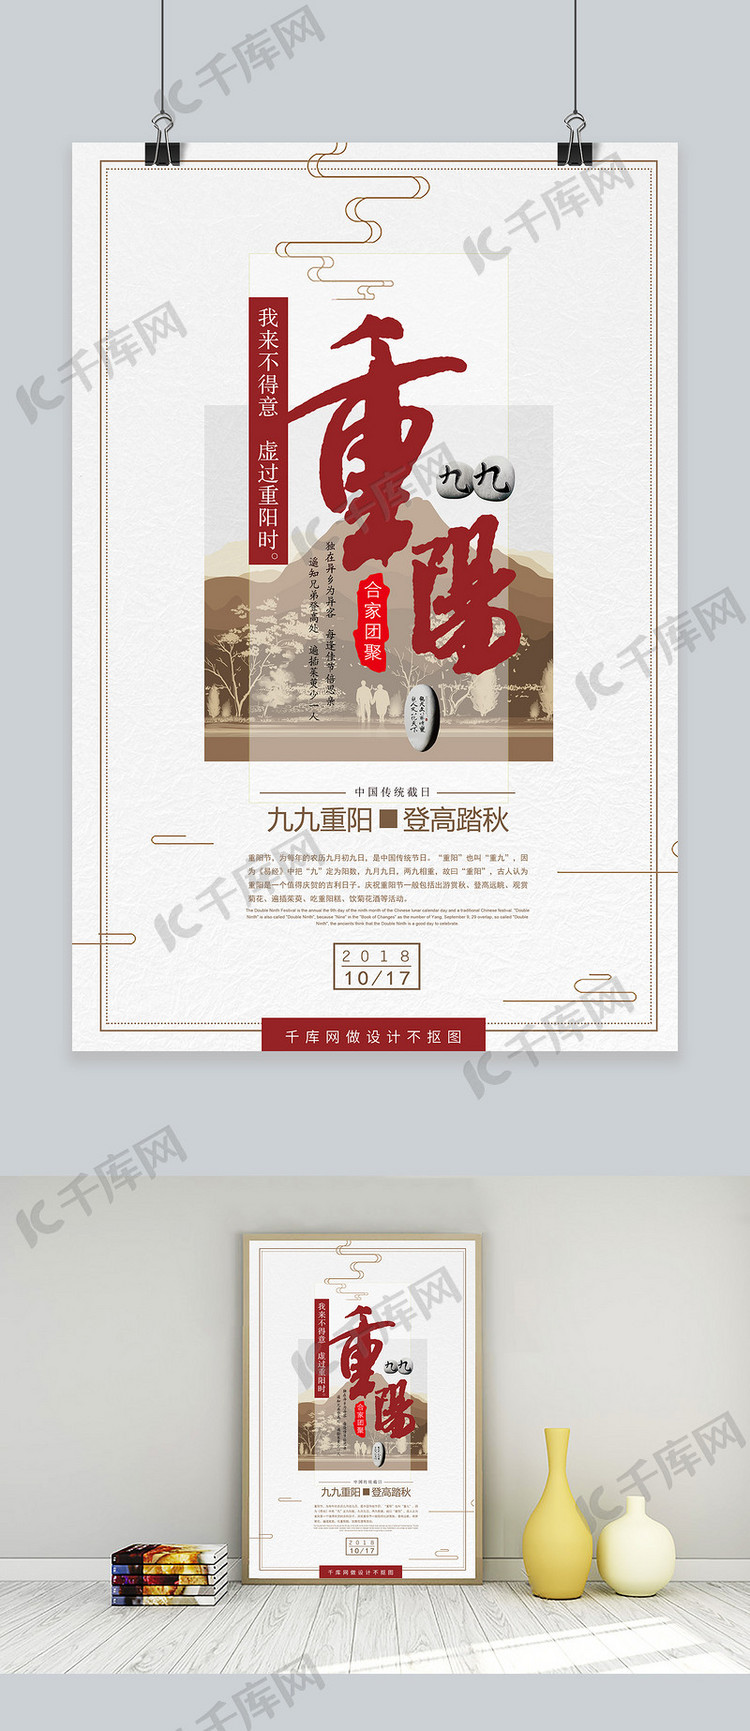 九九重阳节老人节大气简约海报宣传设计